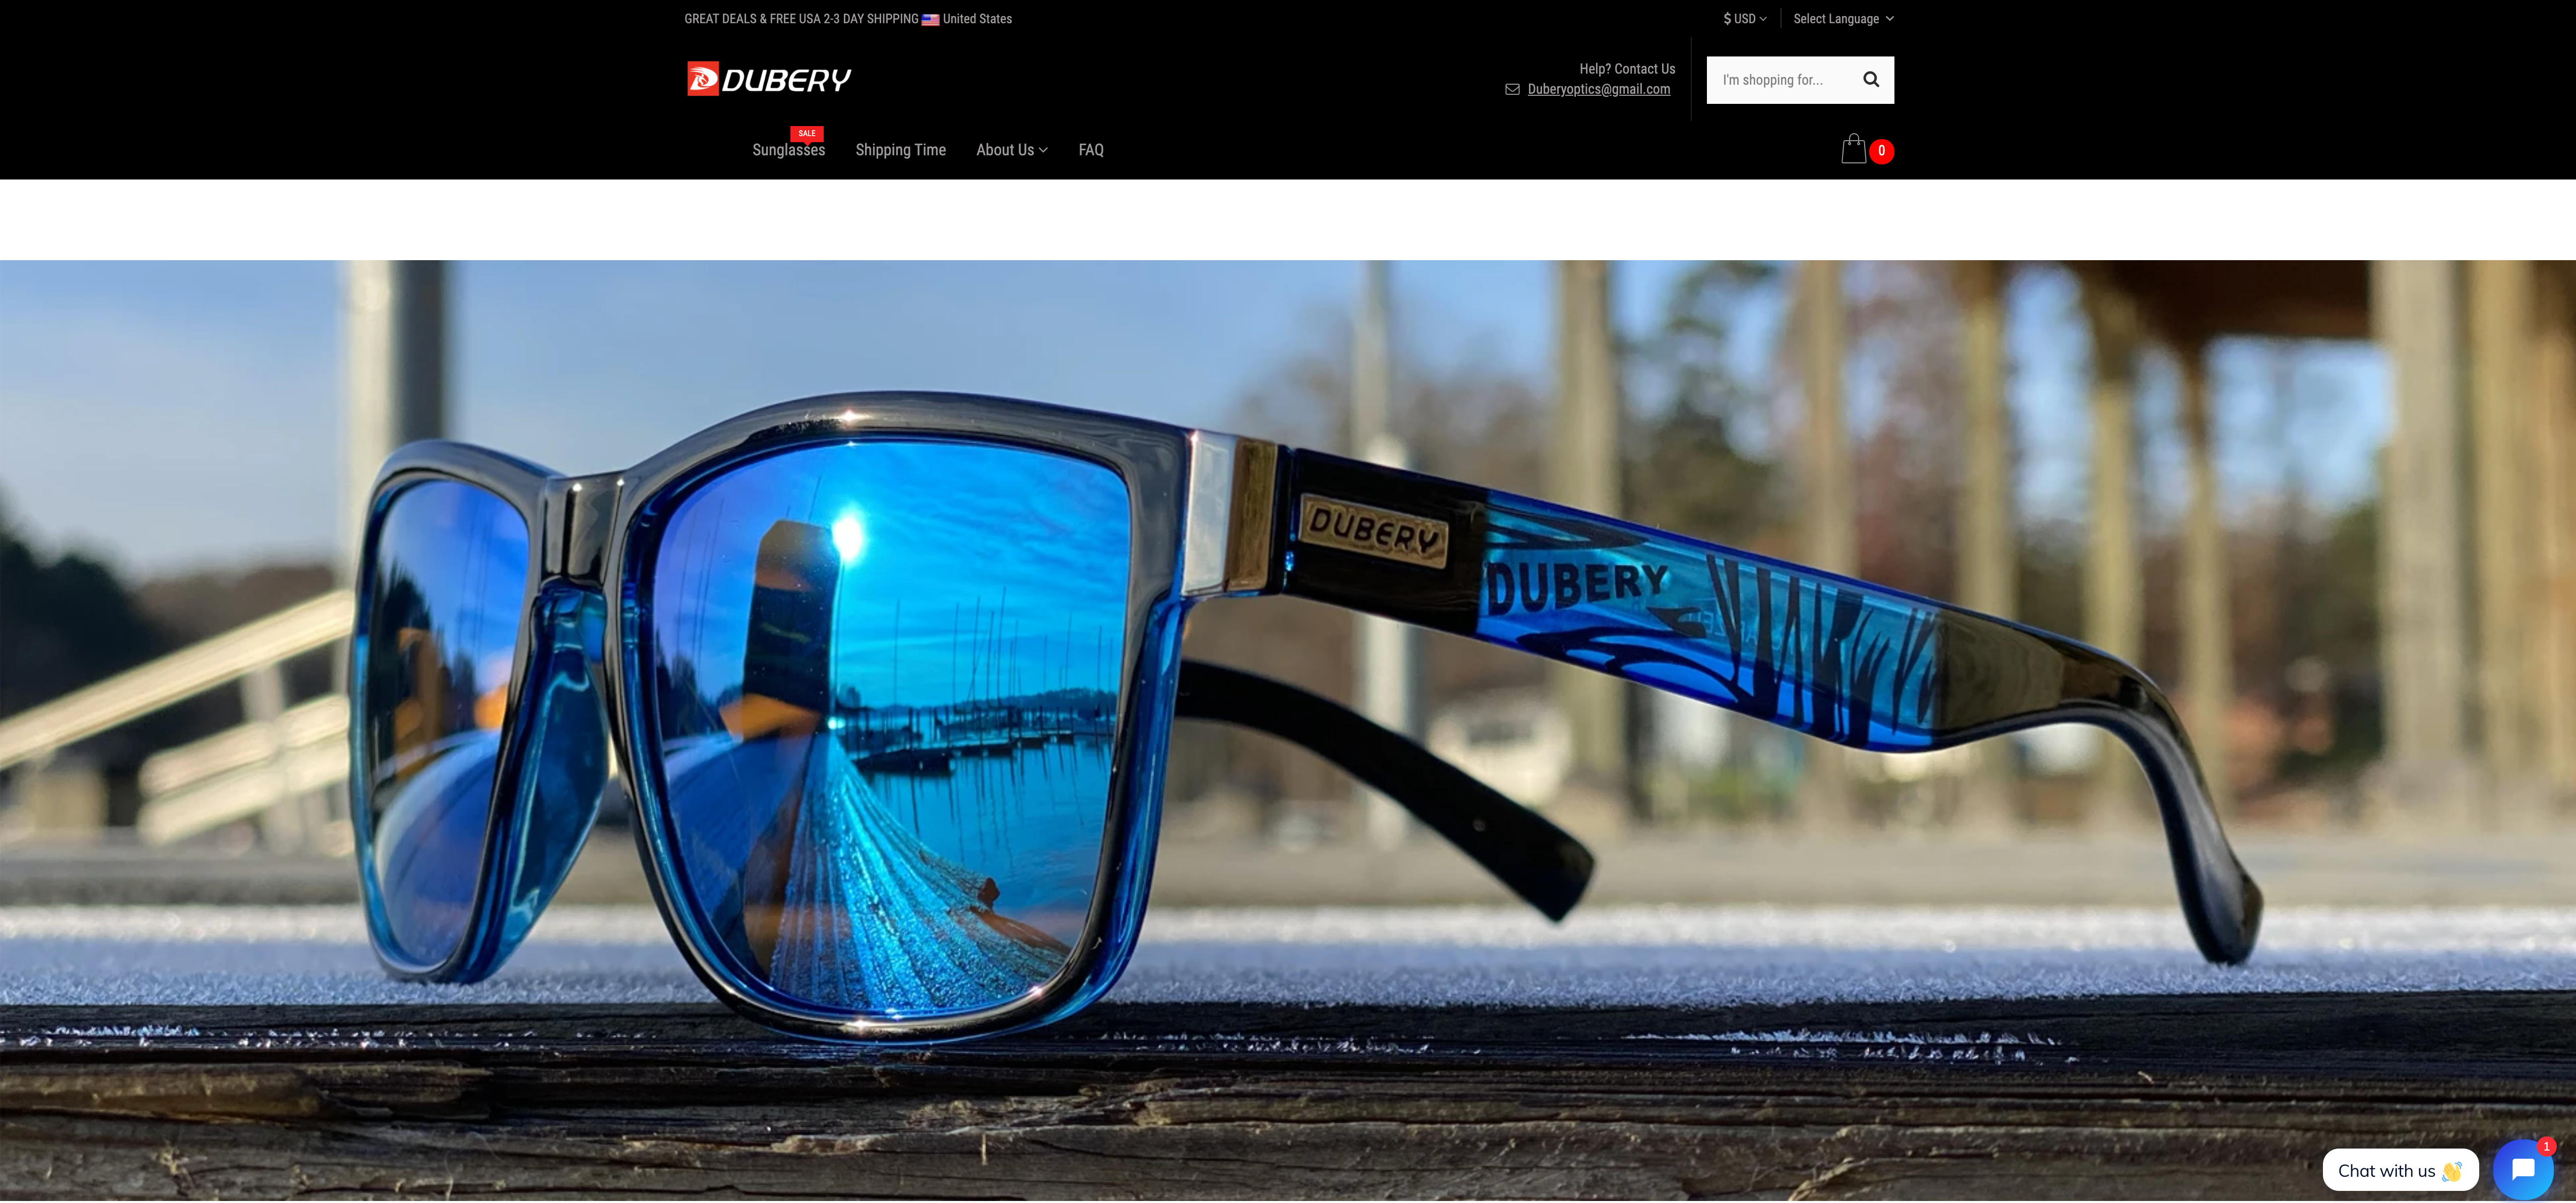 Dubyy® Sunglasses Australia.